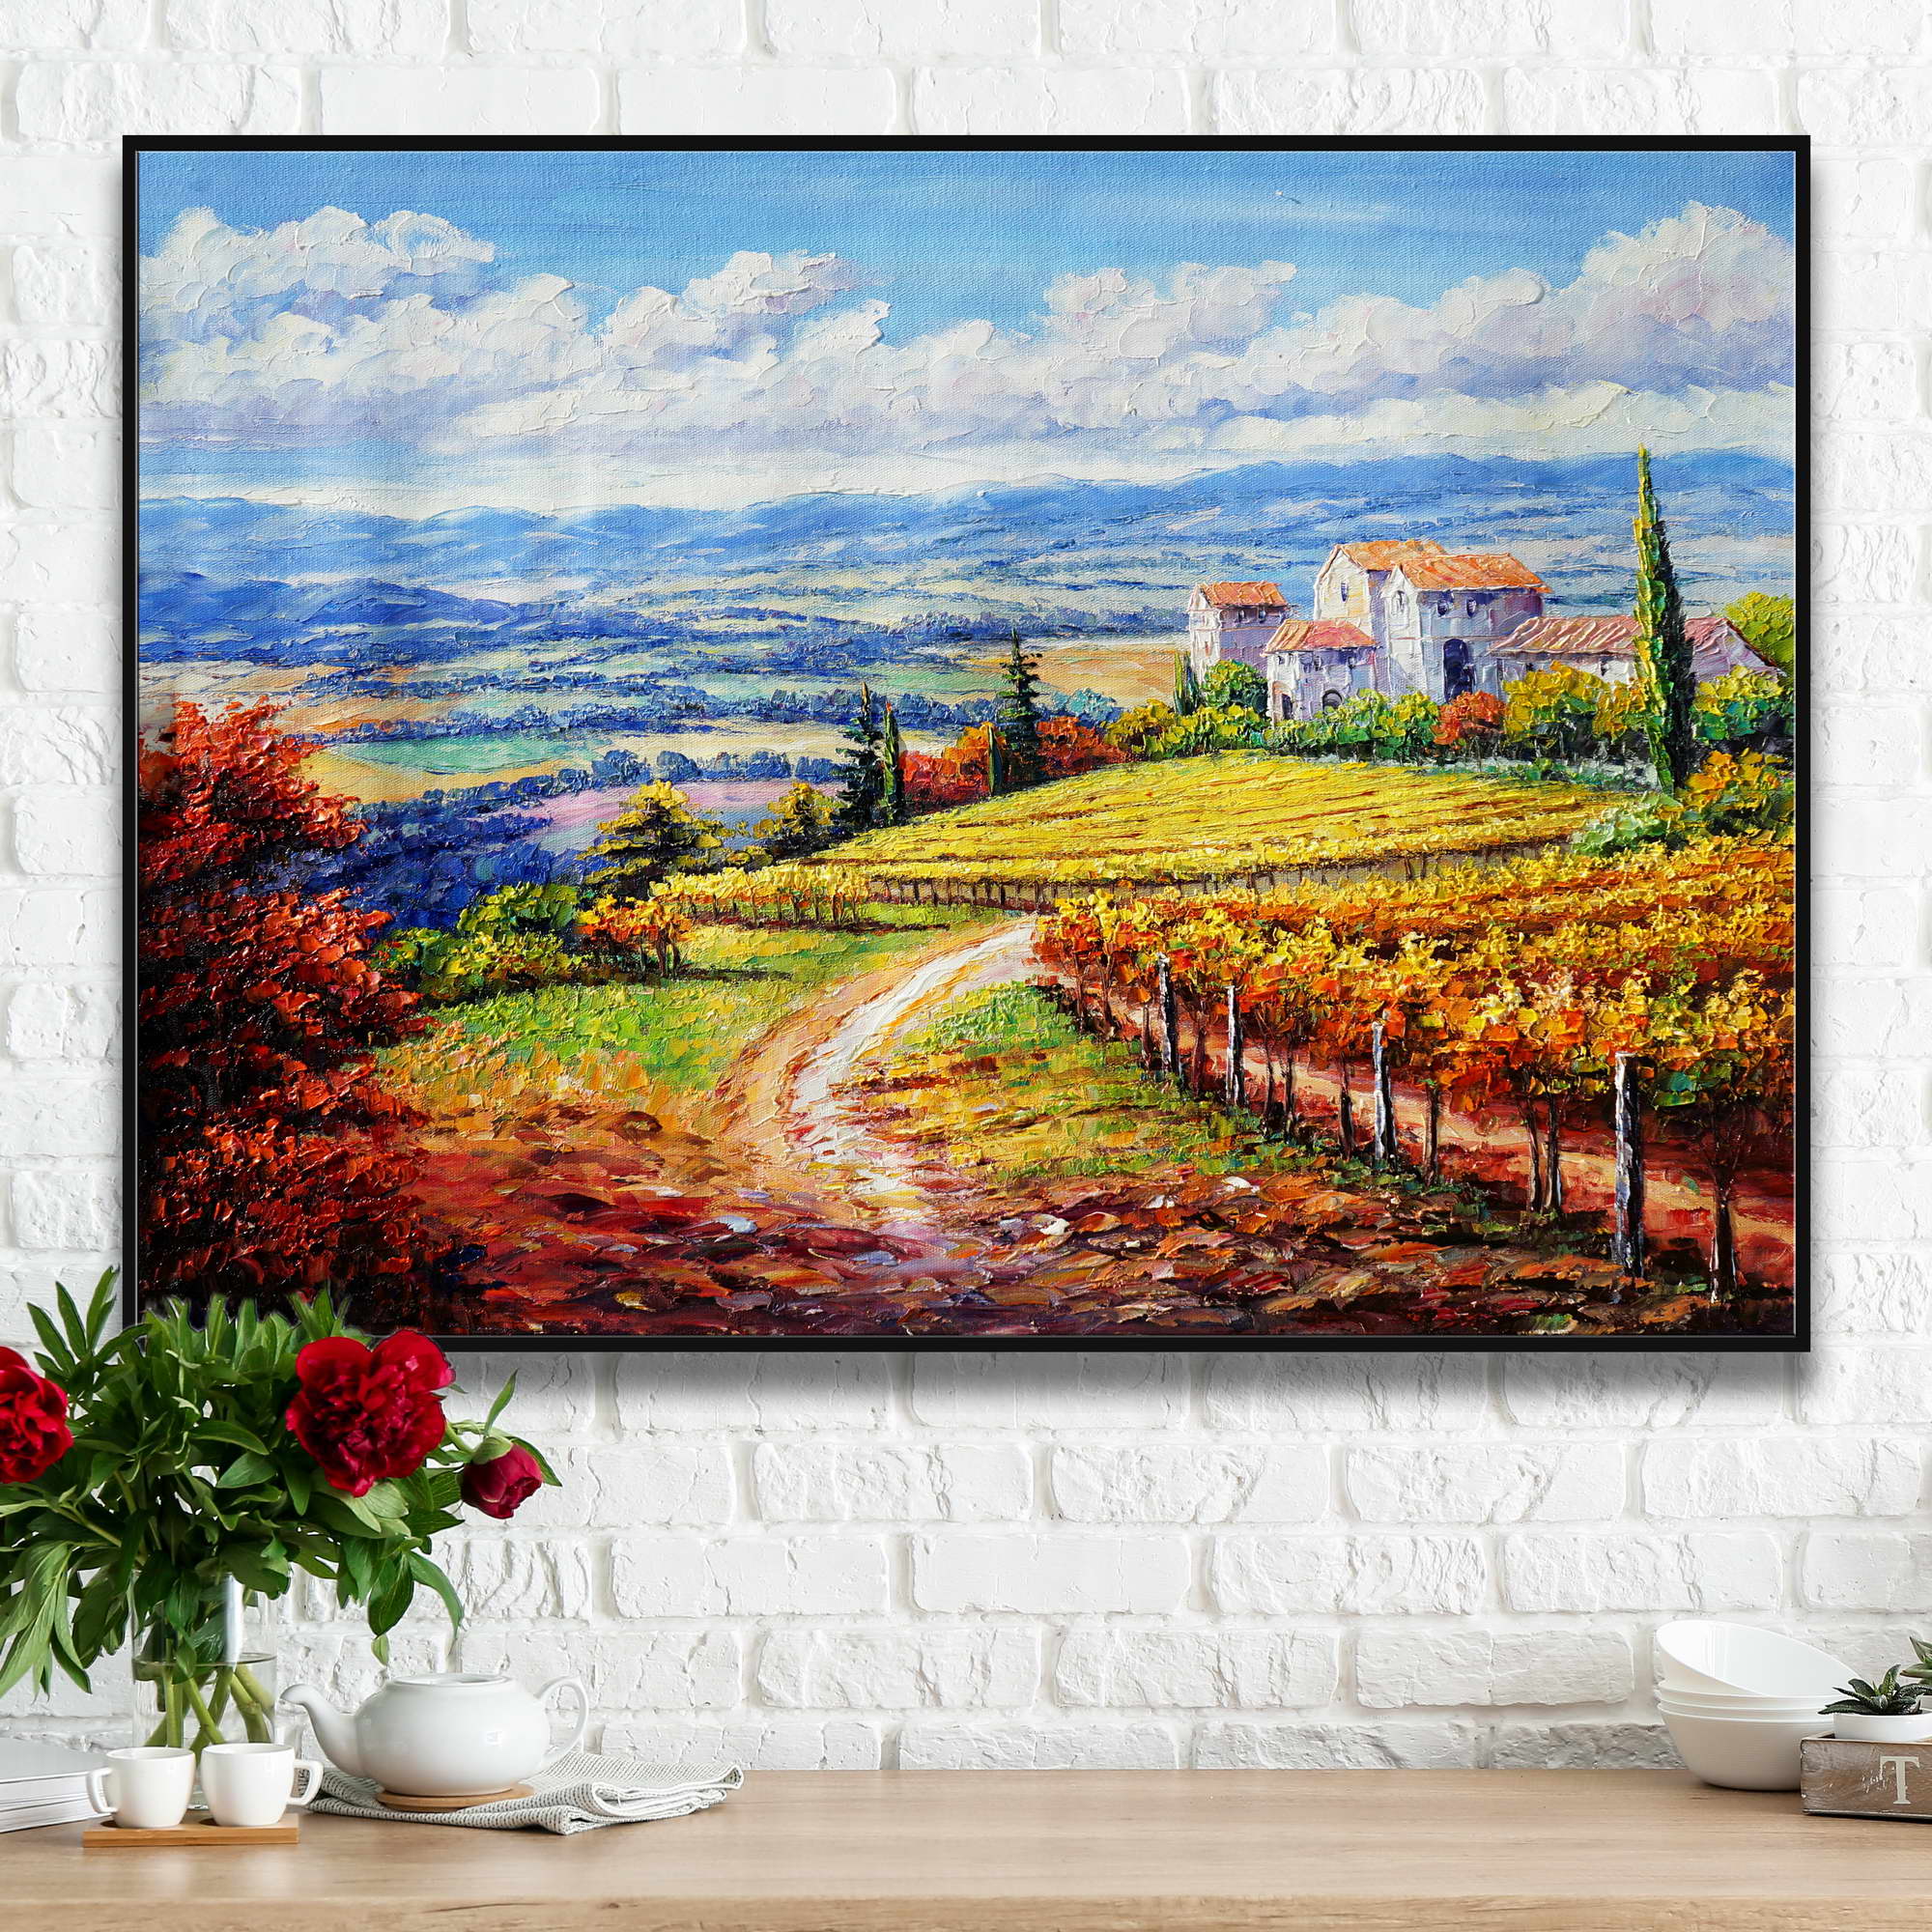 Dipinto paesaggio toscano con casa colonica e vigne